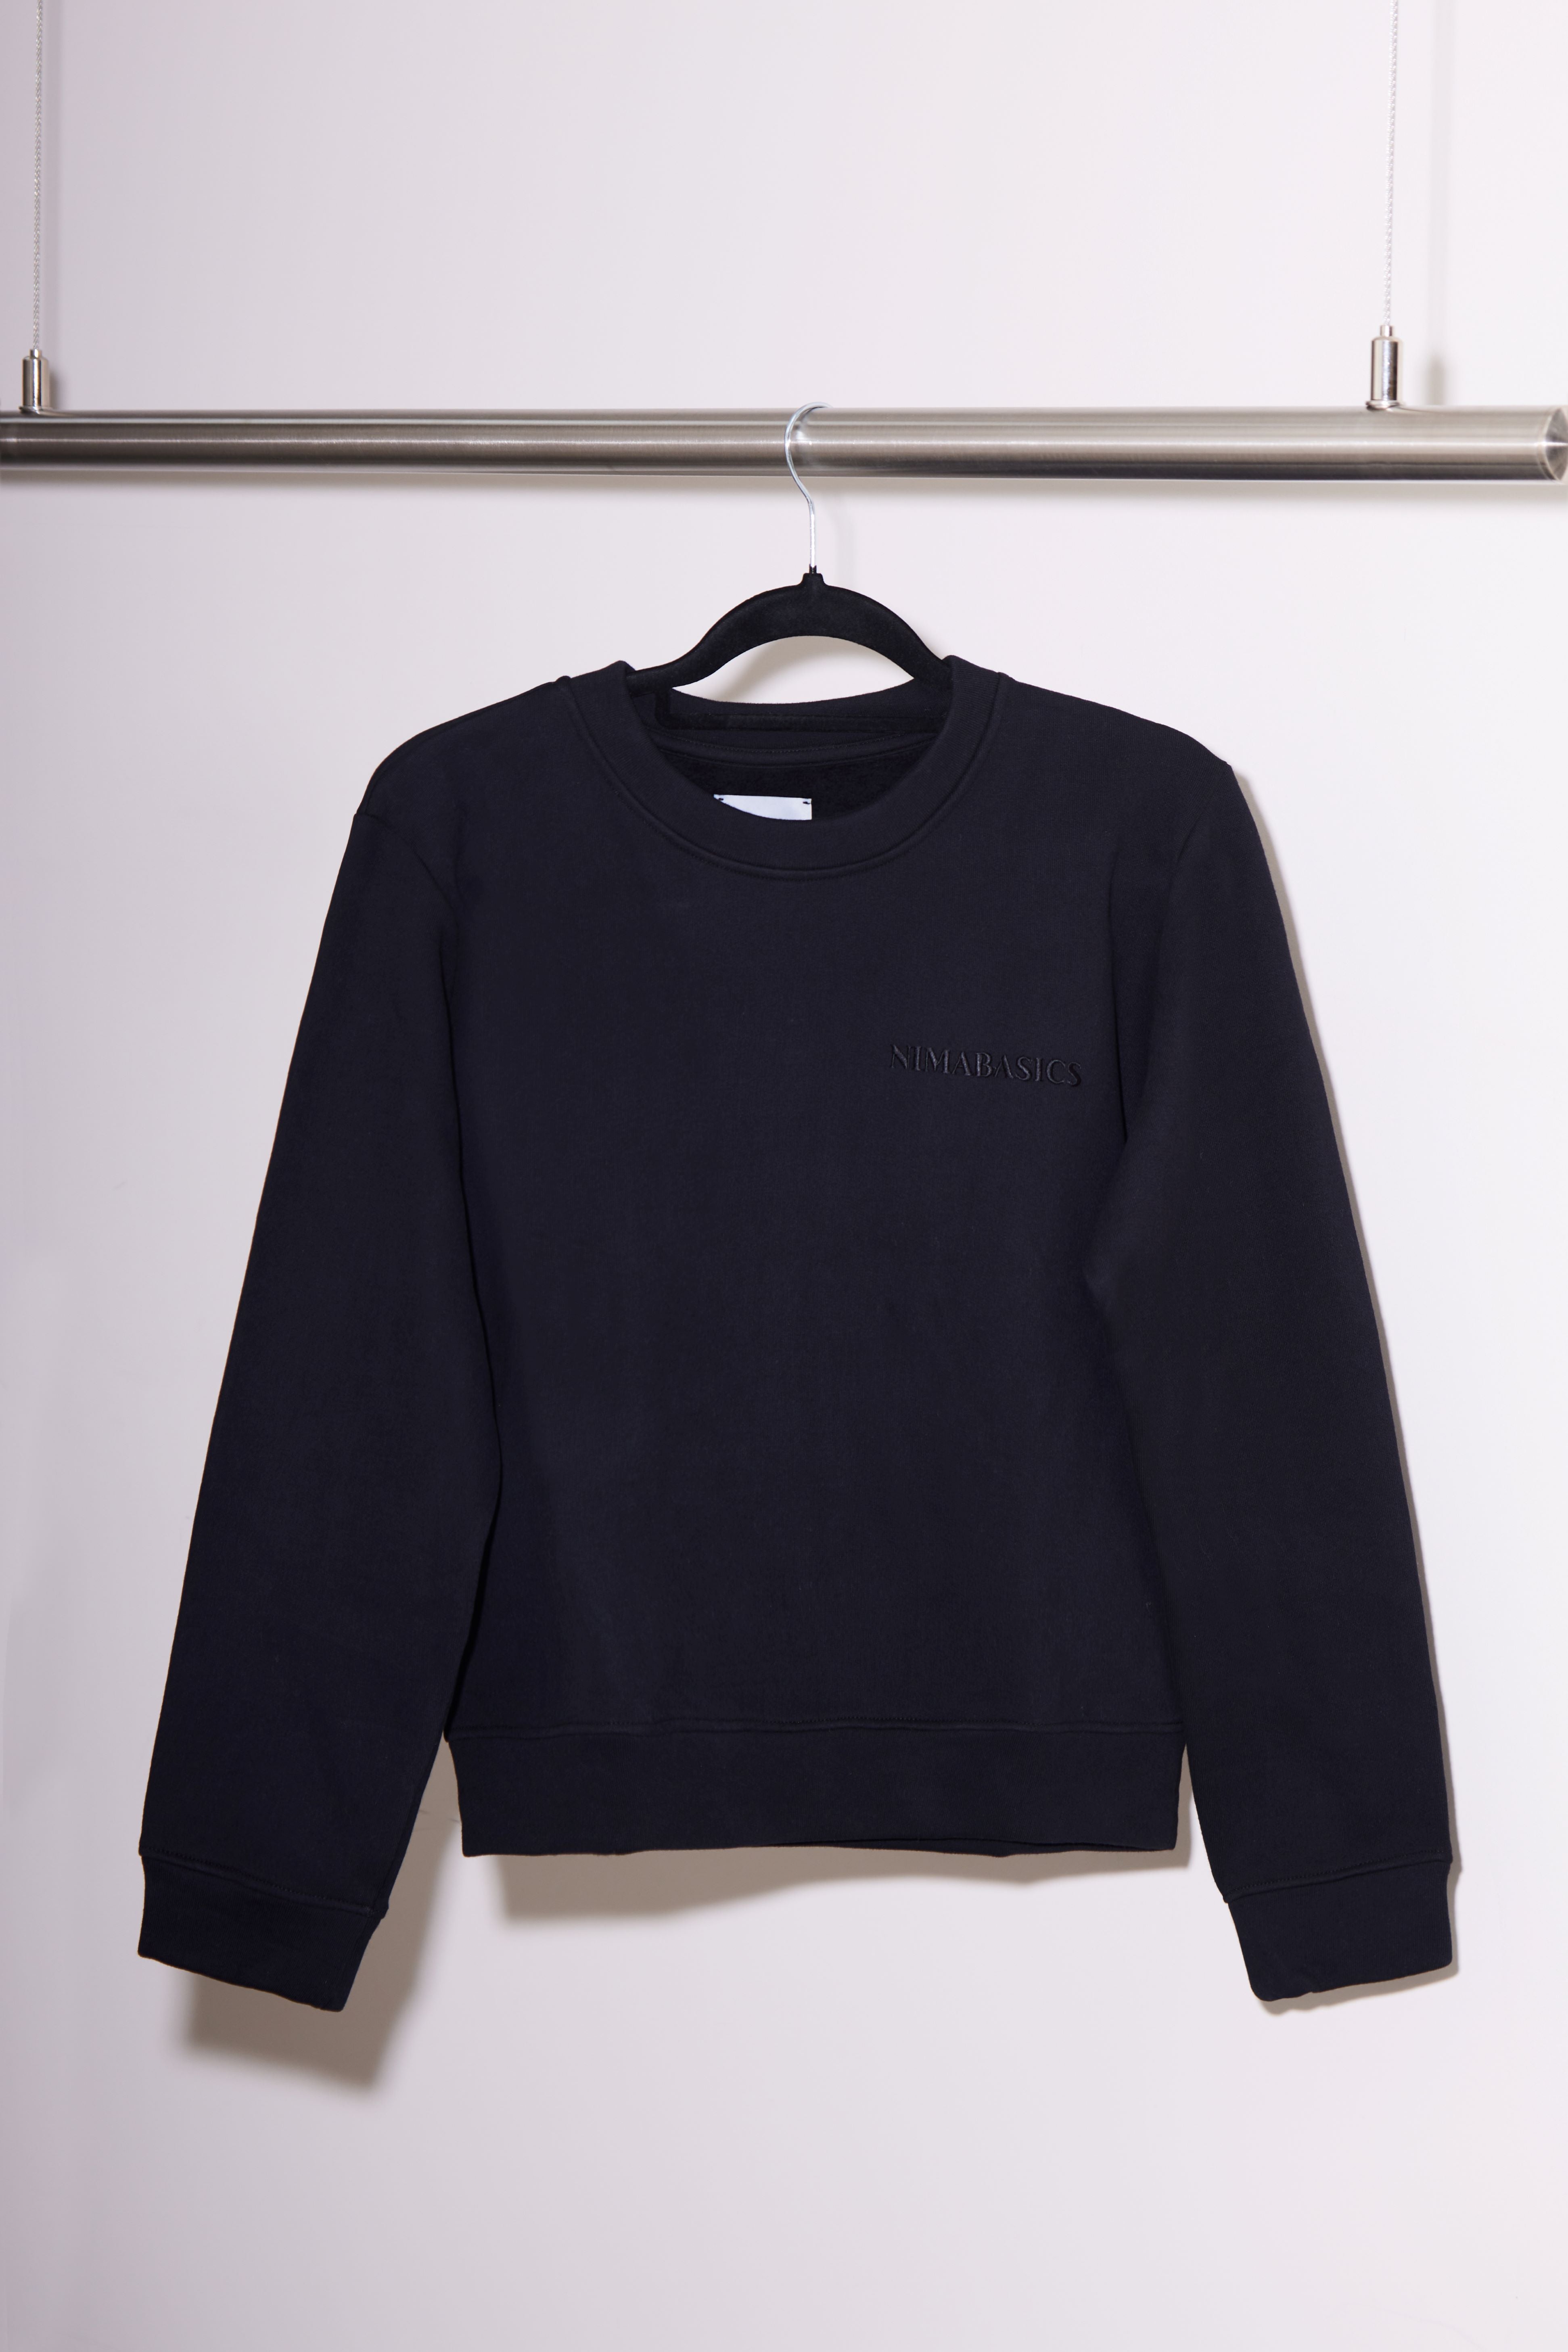 Sweater schwarz hängt an Kleiderstange